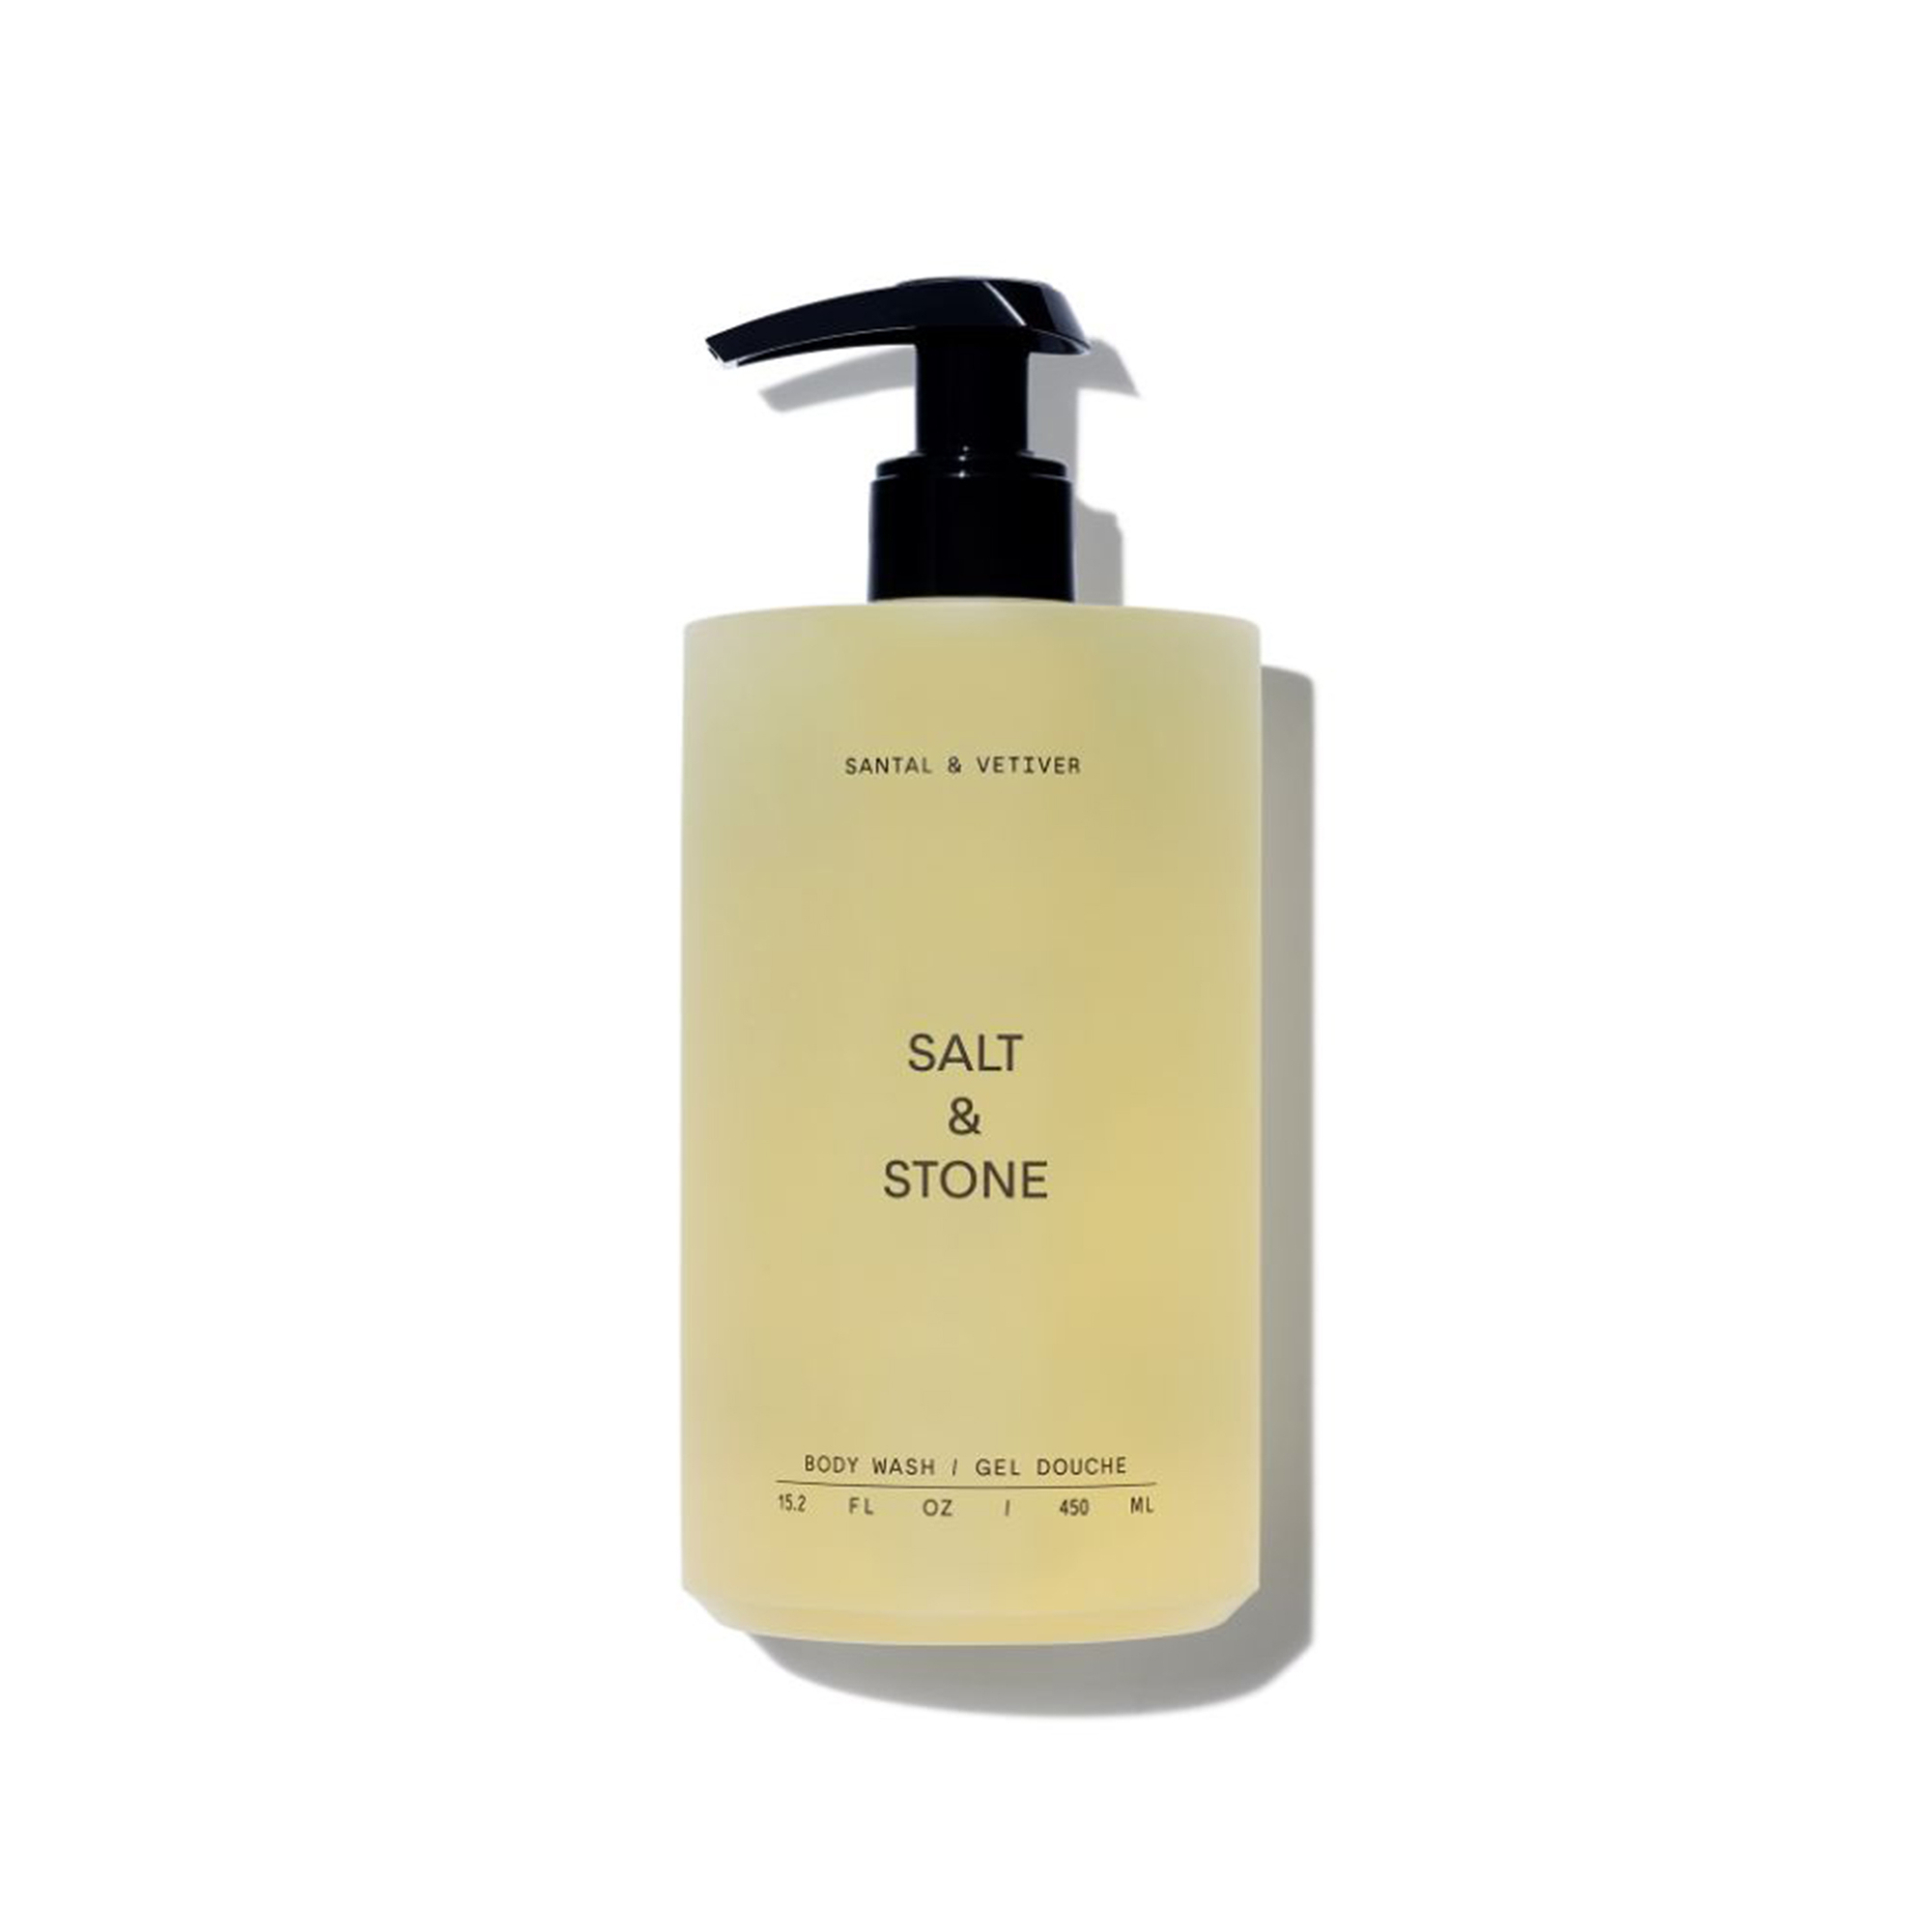 Salt & Stone - Szantálfa & vetiver tusfürdő